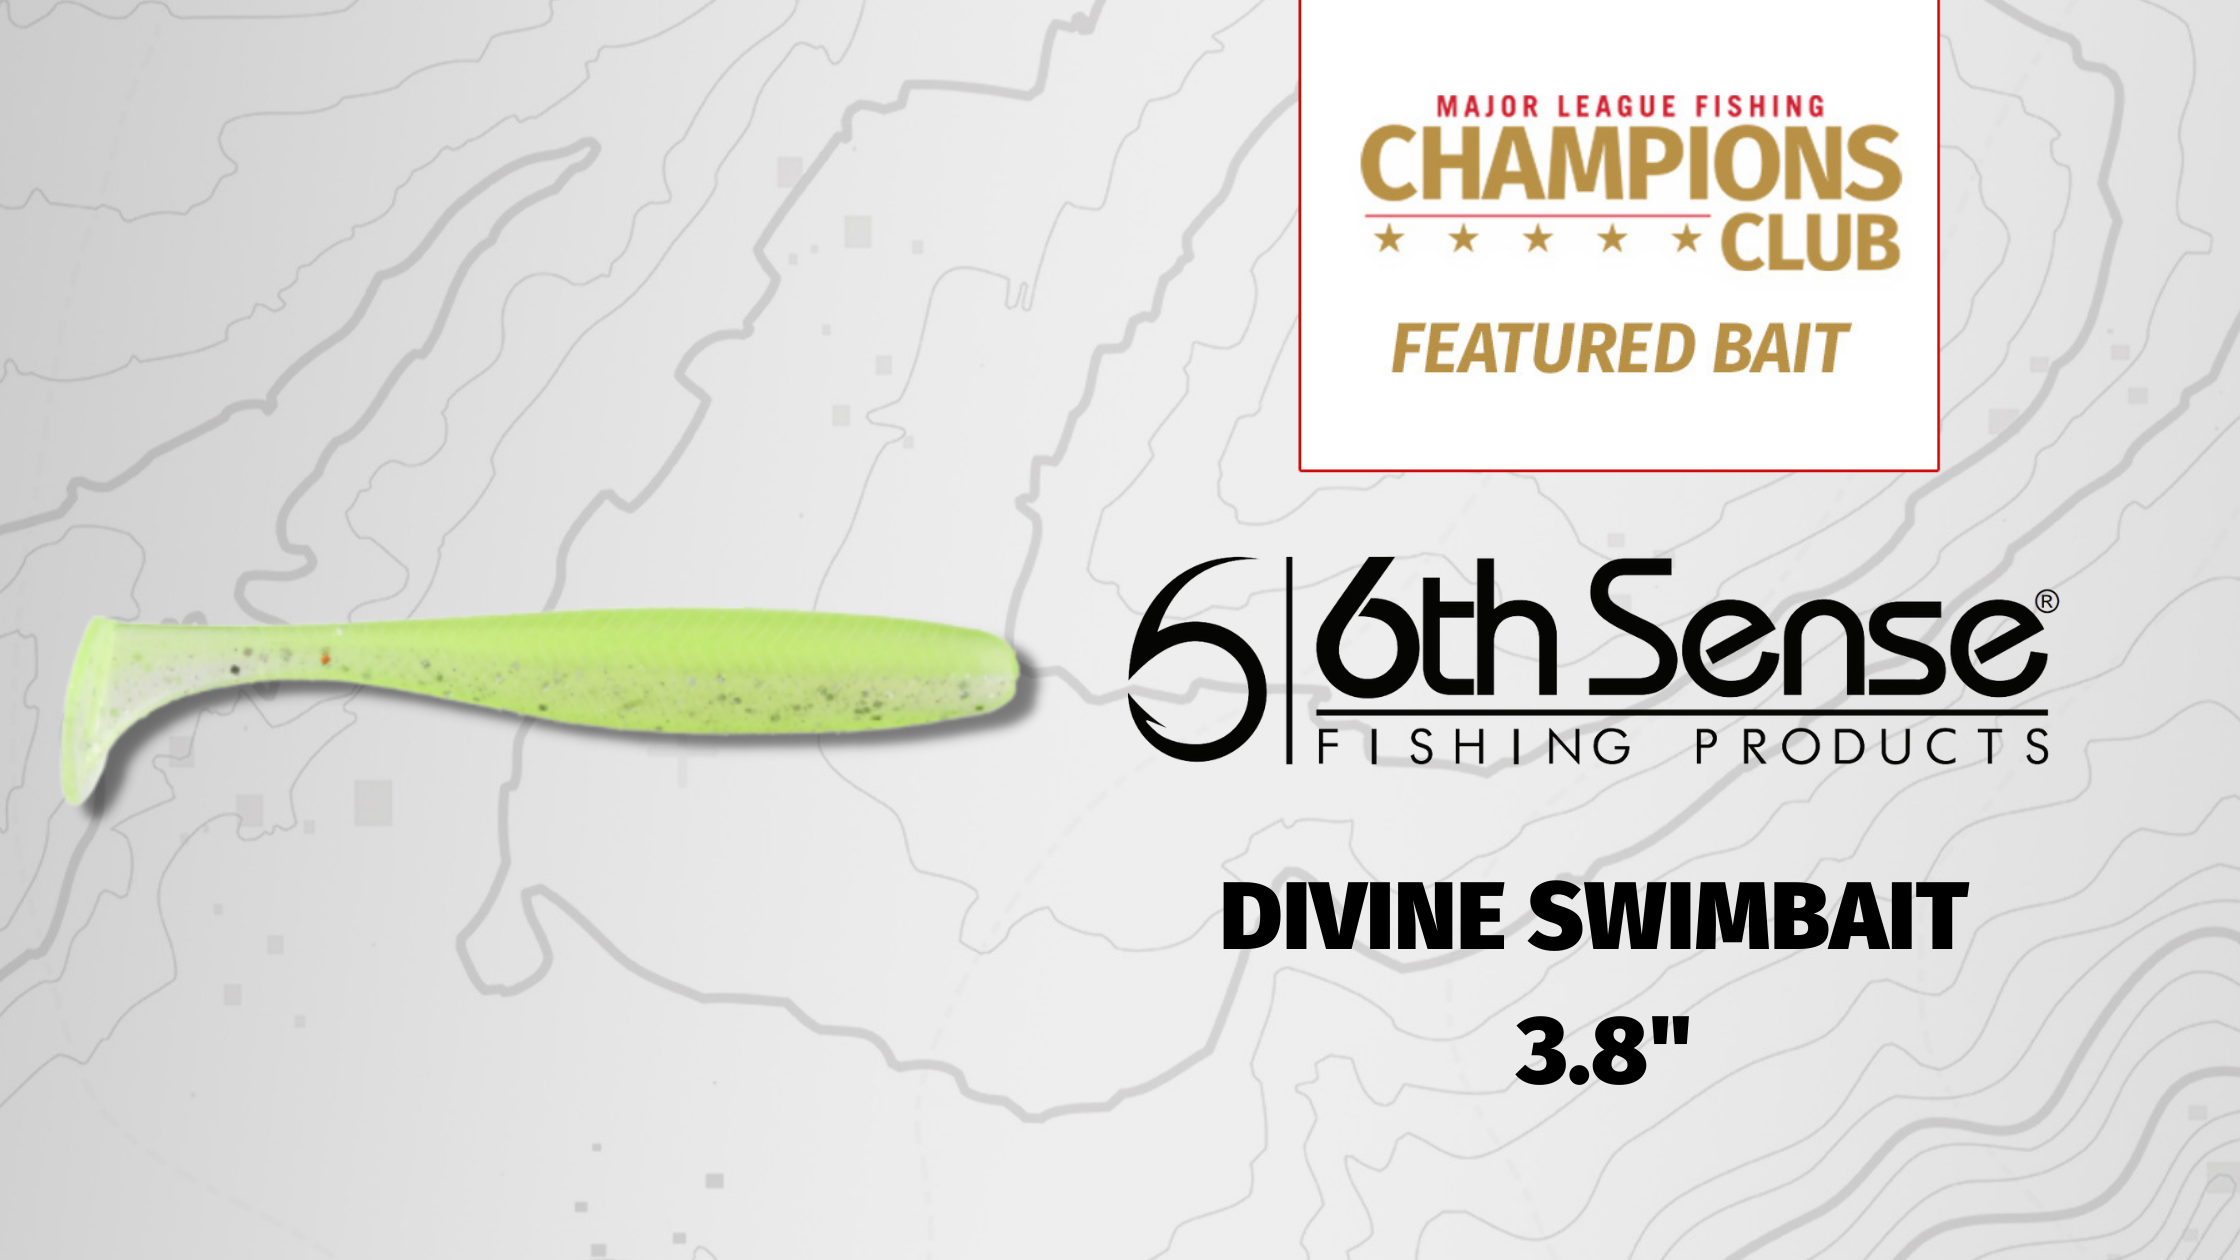 Featured Bait: 6th Sense Divine Swimbait - Major League Fishing